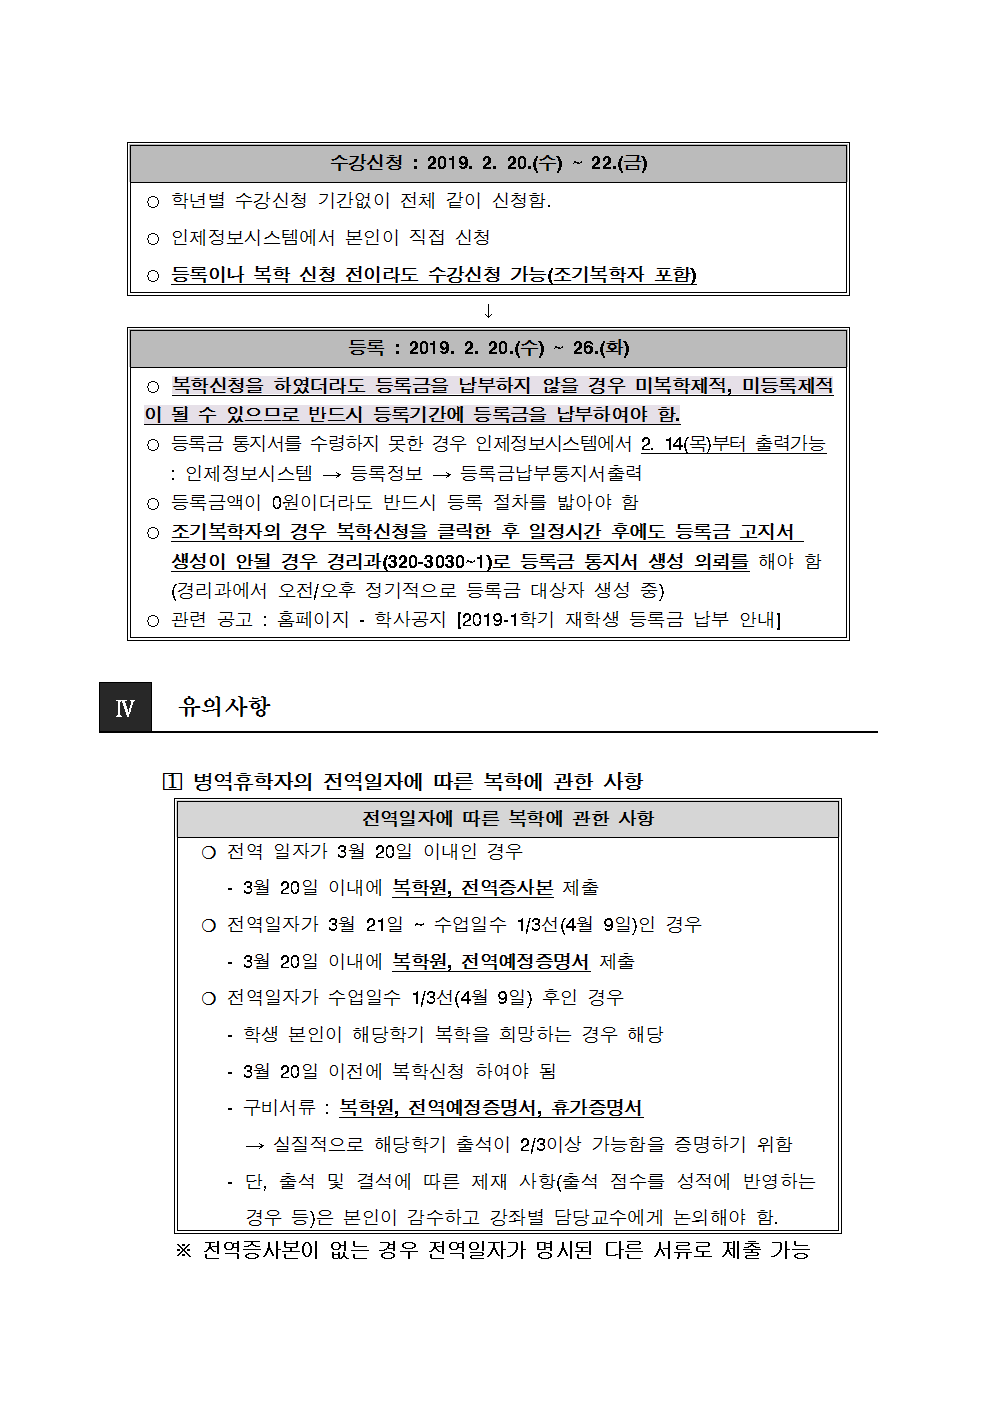 공문 2019-1 복학신청 안내003.png